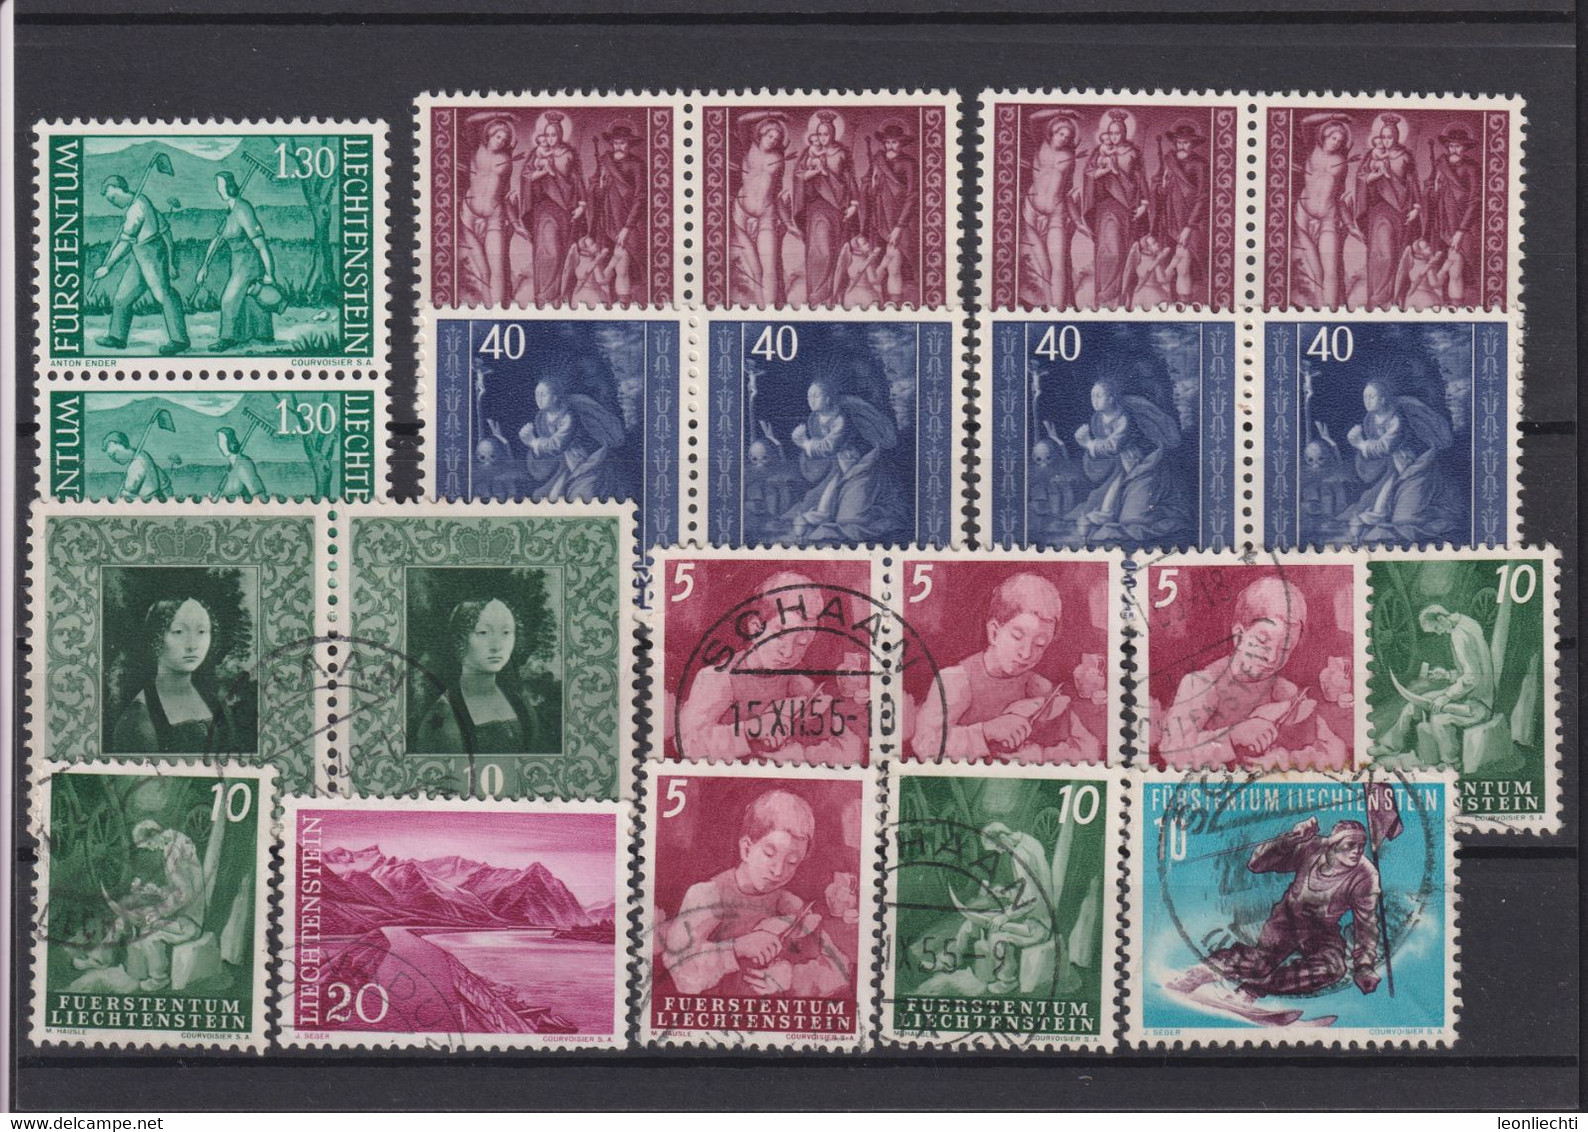 Liechtenstein Lot °  Briefmarken Gestempelt /  Stamps Stamped /  Timbres Oblitérés - Sammlungen